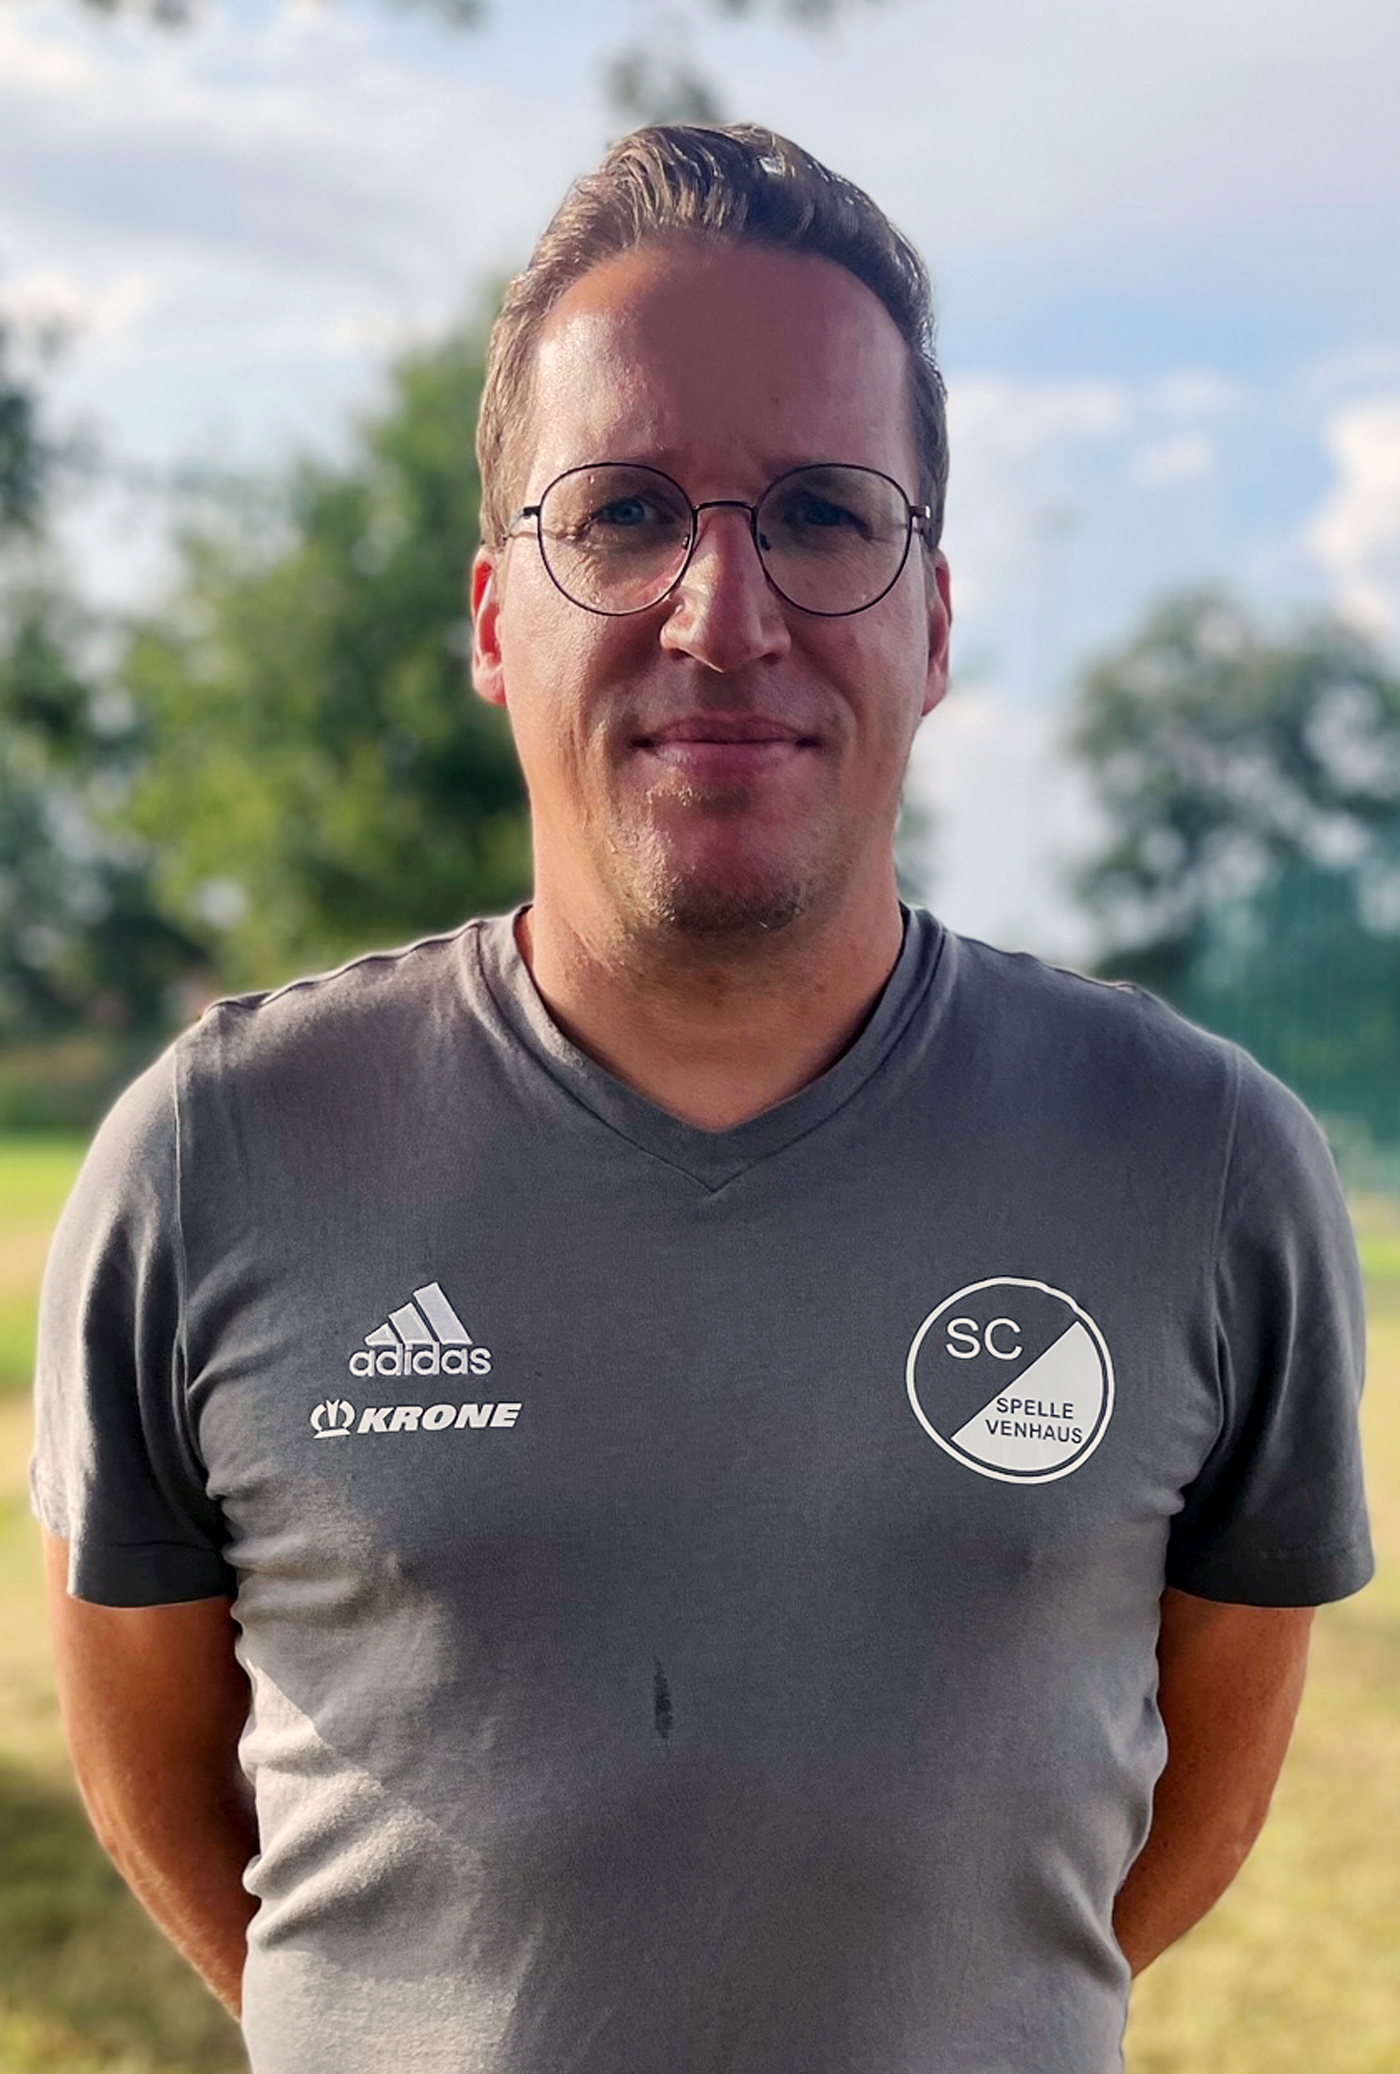 Markus Schütte ist der Sportliche Leiter beim SC Spelle-Venhaus.
Foto: Uli Mentrup